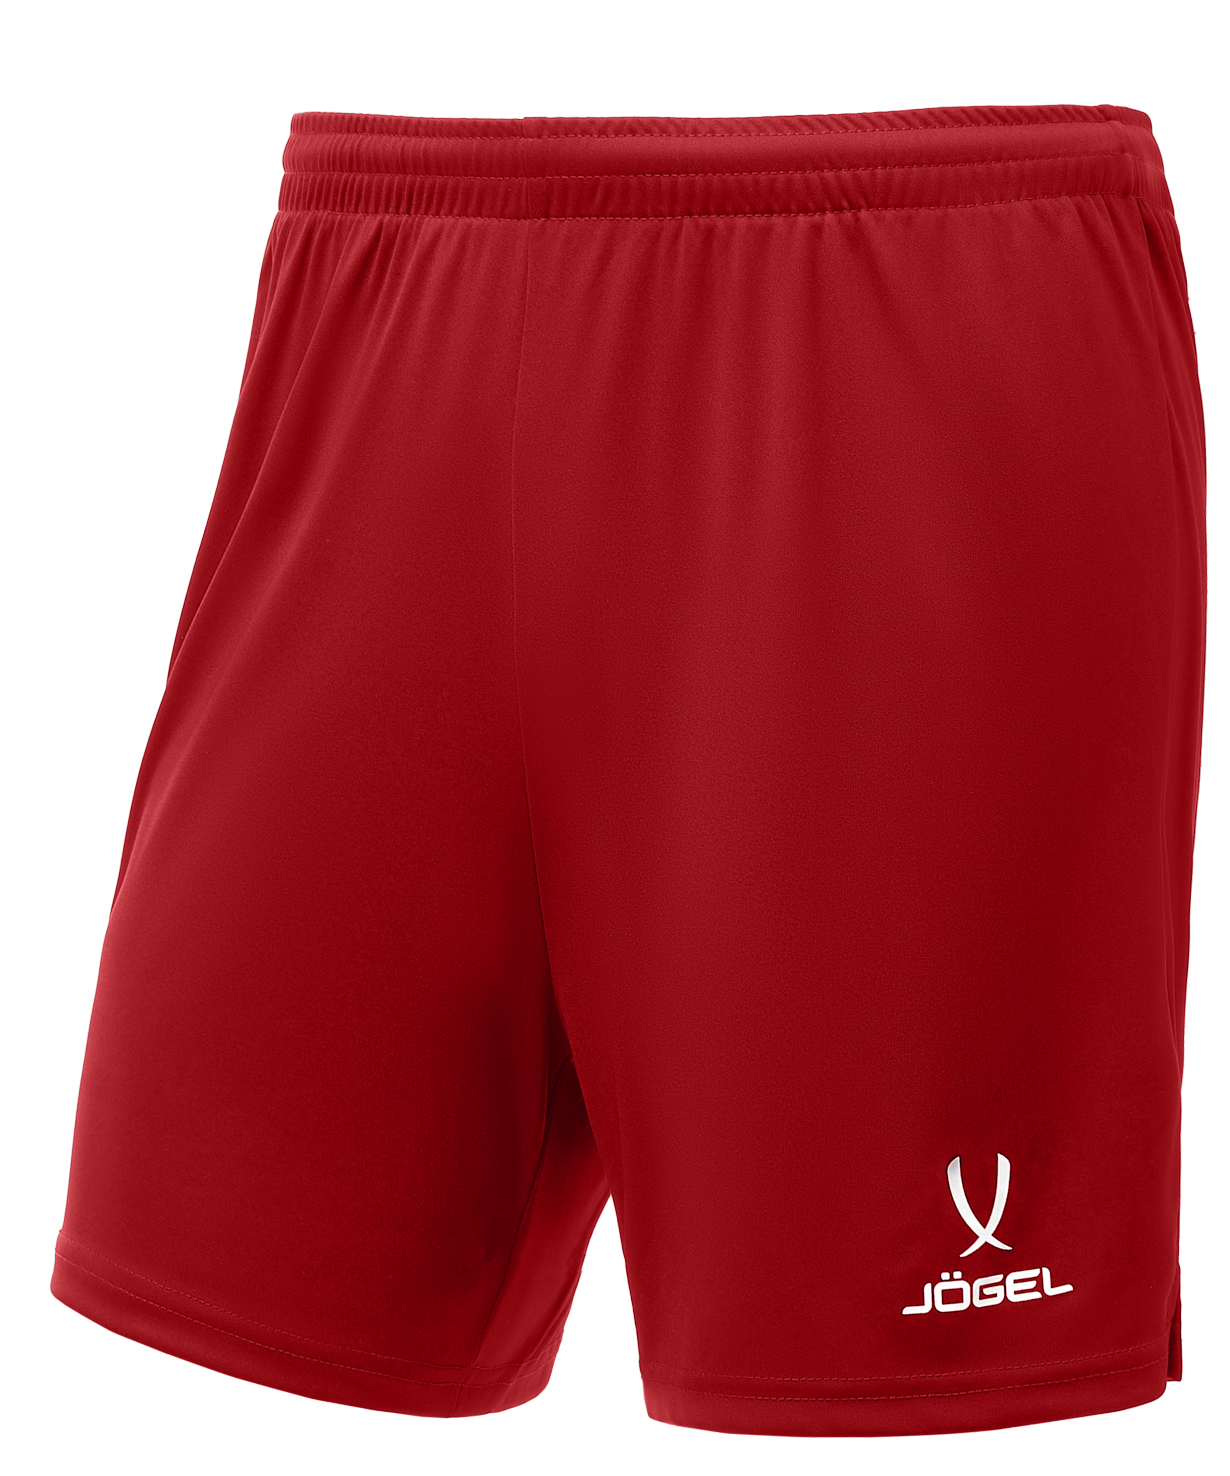 Шорты Jogel размер XS, красный. Шорты волейбольные валберис. Волейбольные шорты мужские. Шорты для волейбола мужские.